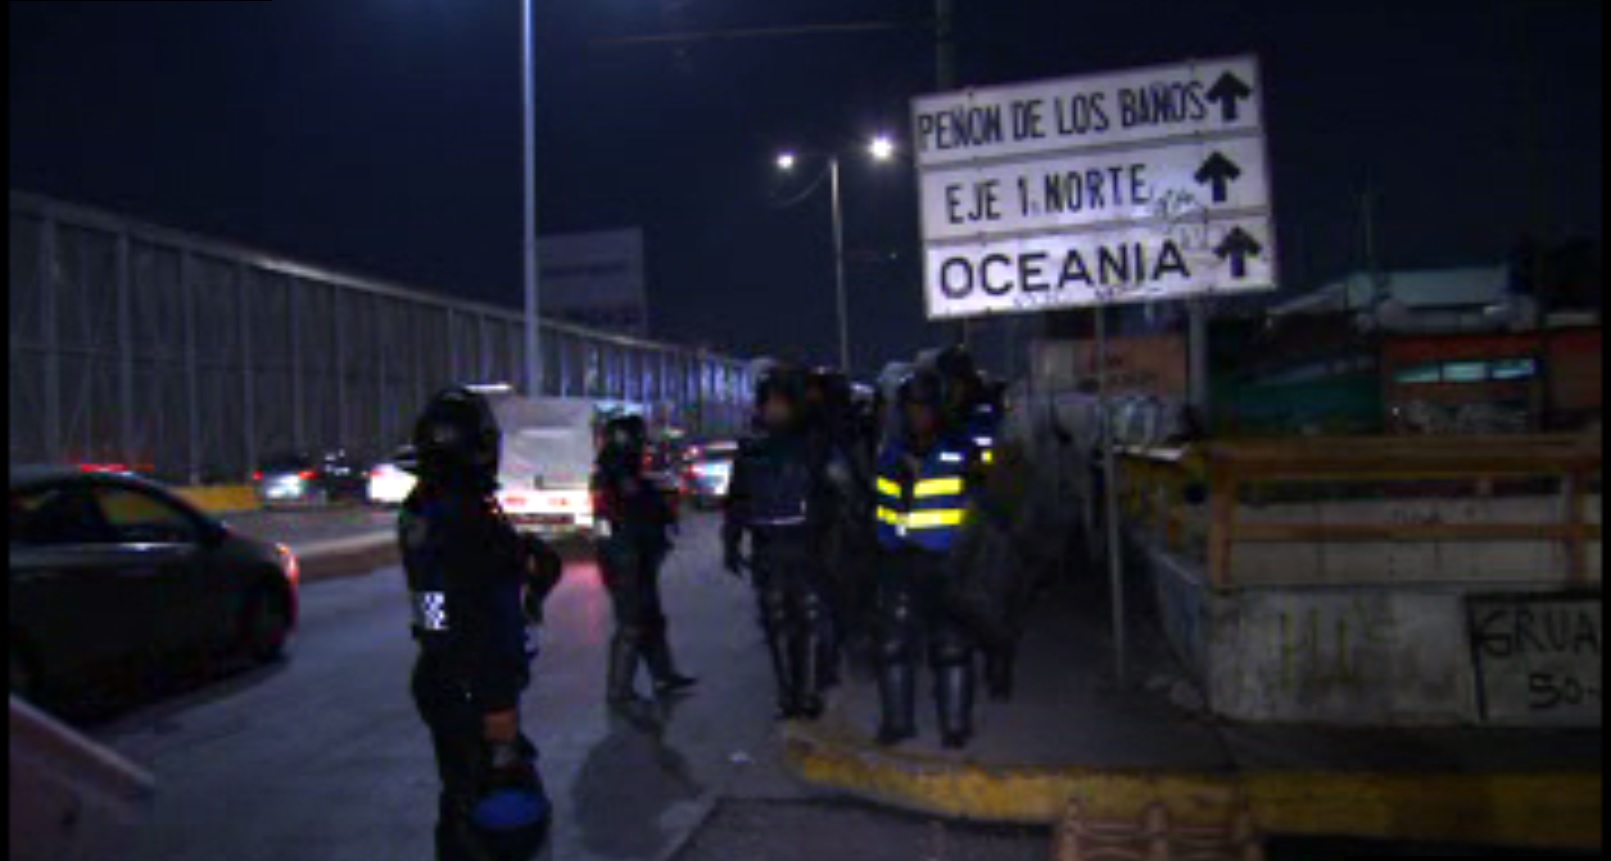 Tránsito en Río Consulado es afectado por una protesta a la altura de Peñón de los Baños; granaderos de la Ciudad de México retiran el bloqueo. (Noticieros Televisa)